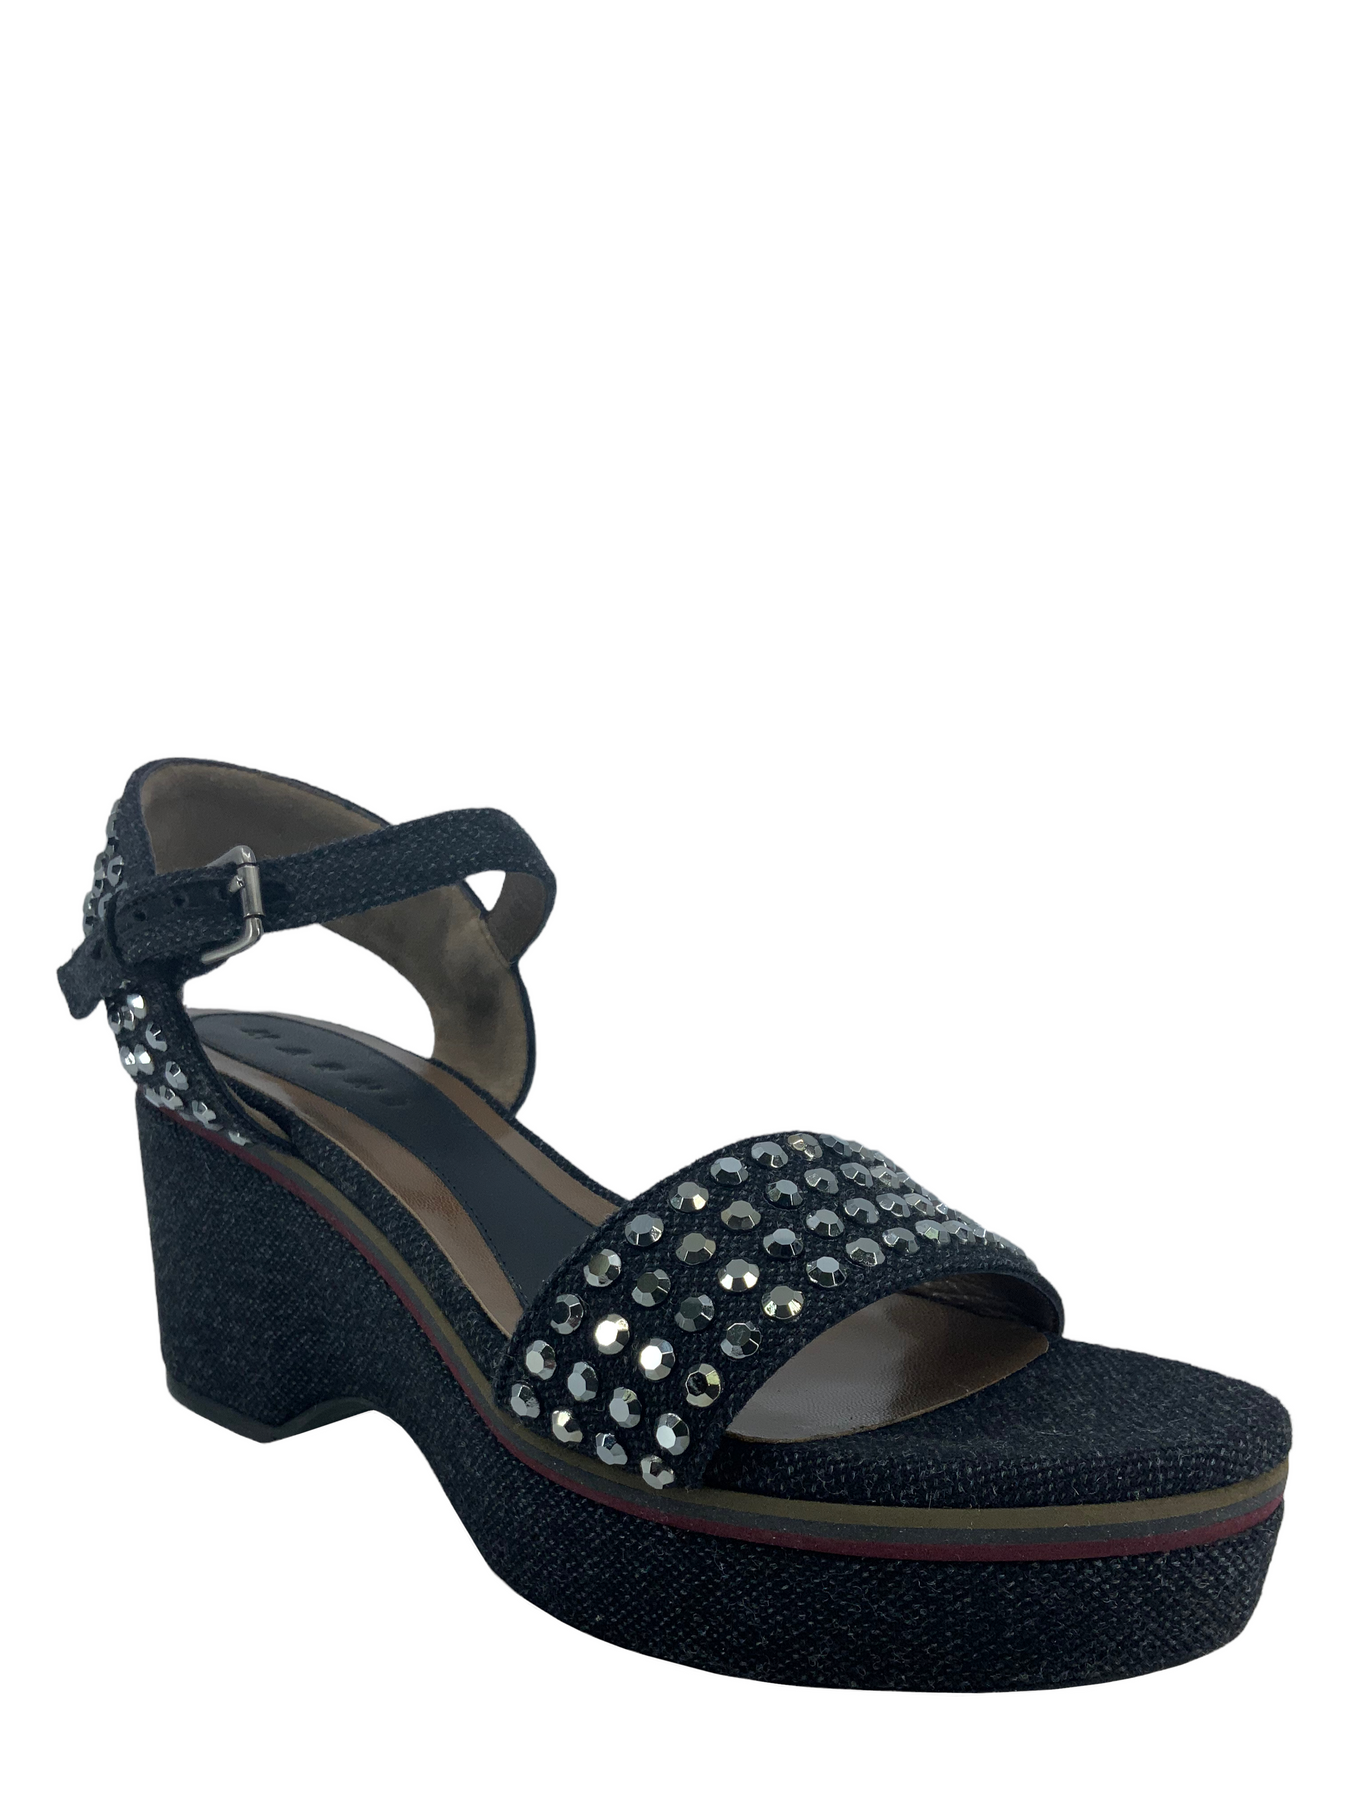 opstrøms Typisk nul MARNI Studded Denim Ankle Strap Wedge Sandals Size 9 - Consigned Designs